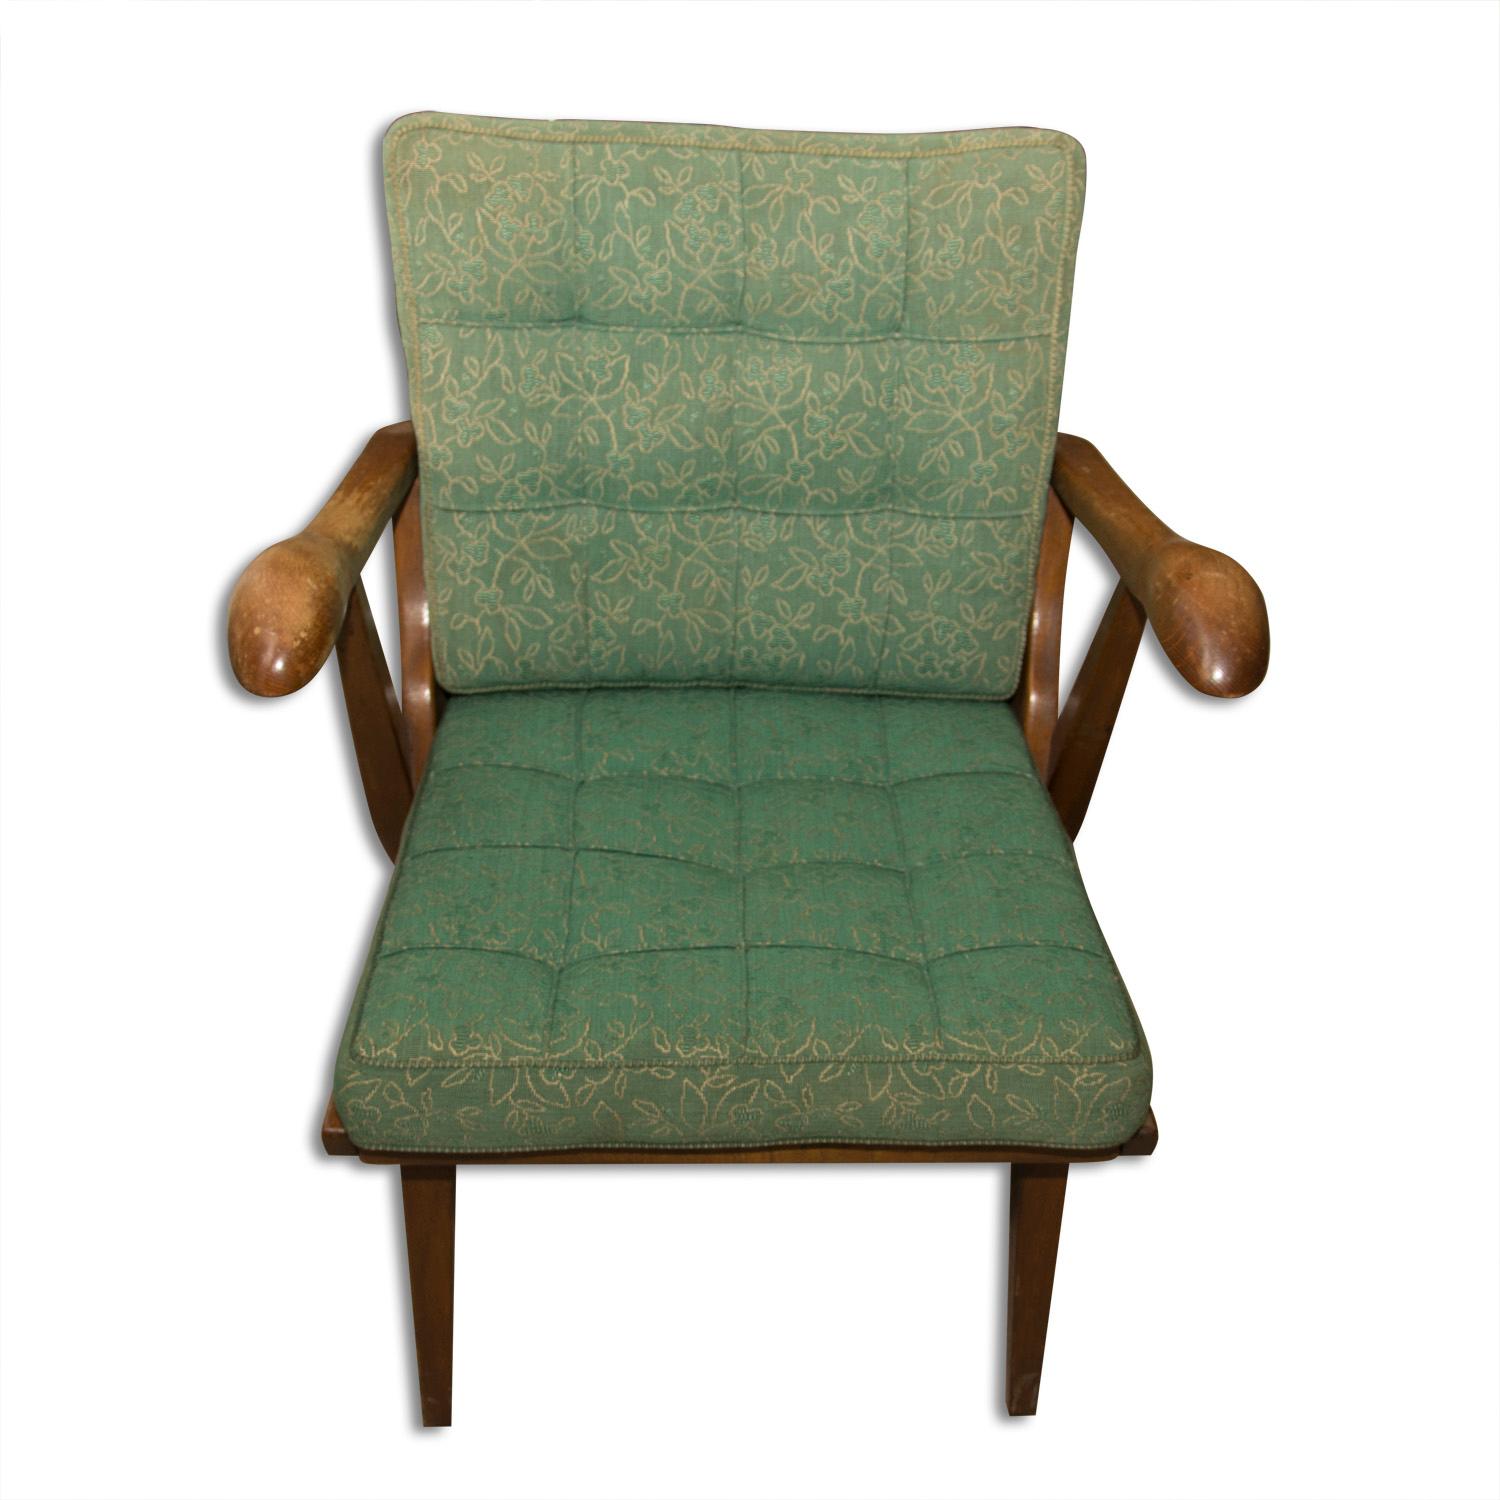 Ein Paar Sessel aus der Mitte des Jahrhunderts, die in der Tschechoslowakei in den 1950er Jahren hergestellt wurden. Er ist aus Eichenholz gefertigt und verfügt über abnehmbare Kissen mit Originalpolsterung. Die Stühle sind voll funktionsfähig, aber